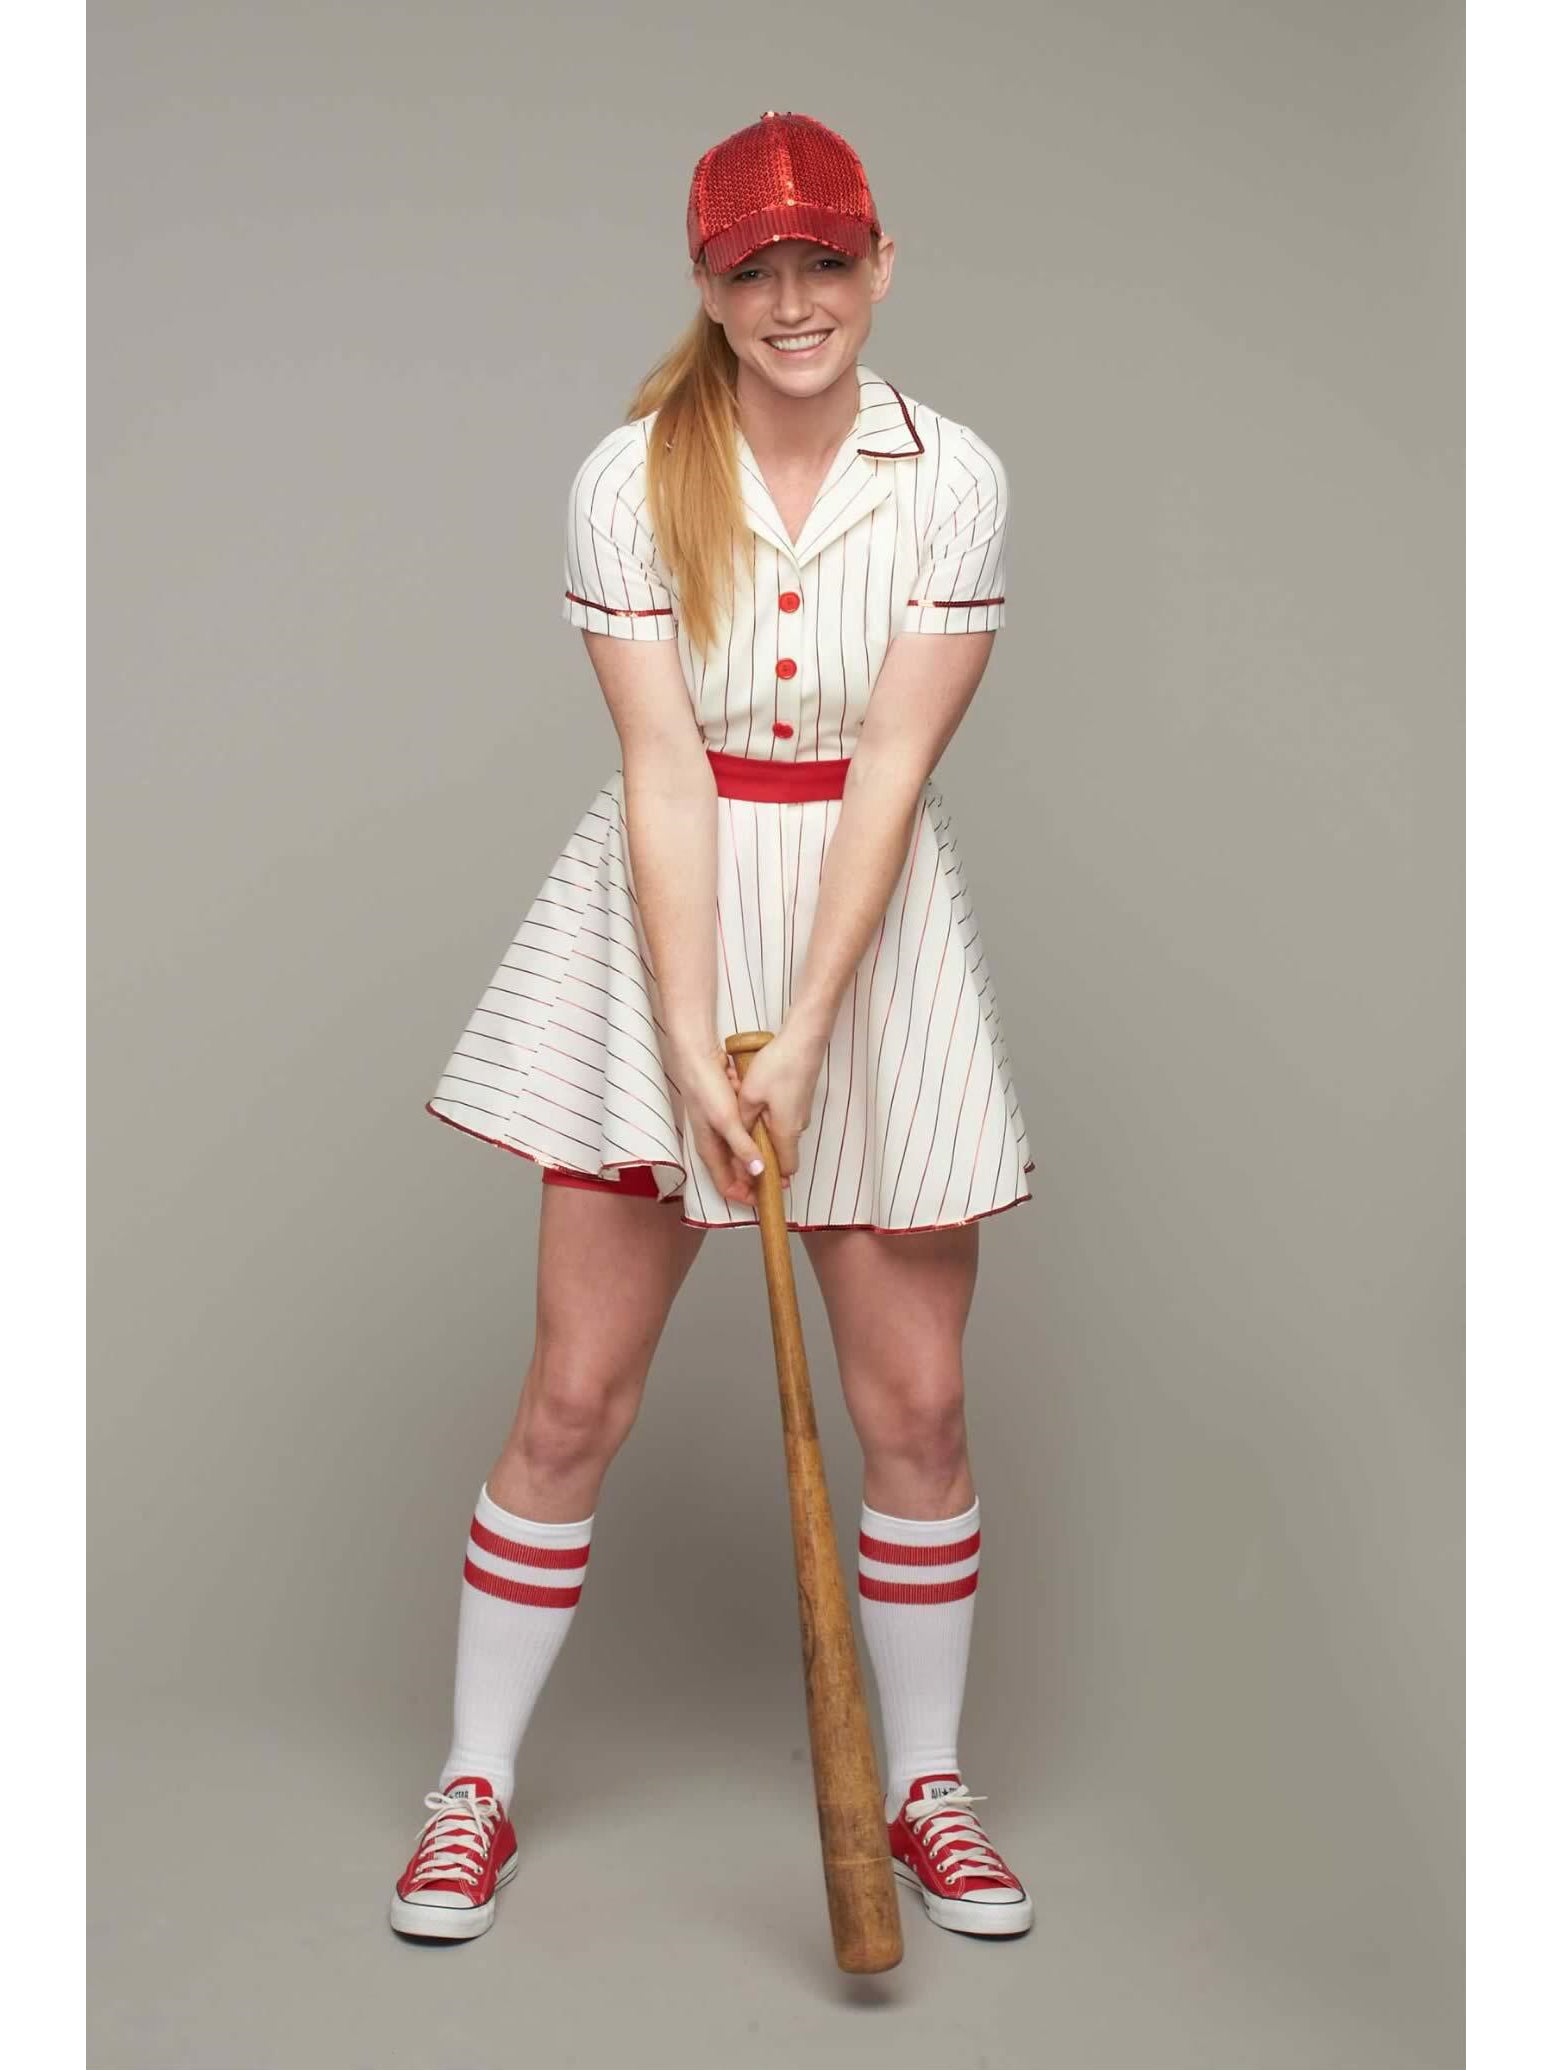 womens baseball player costume